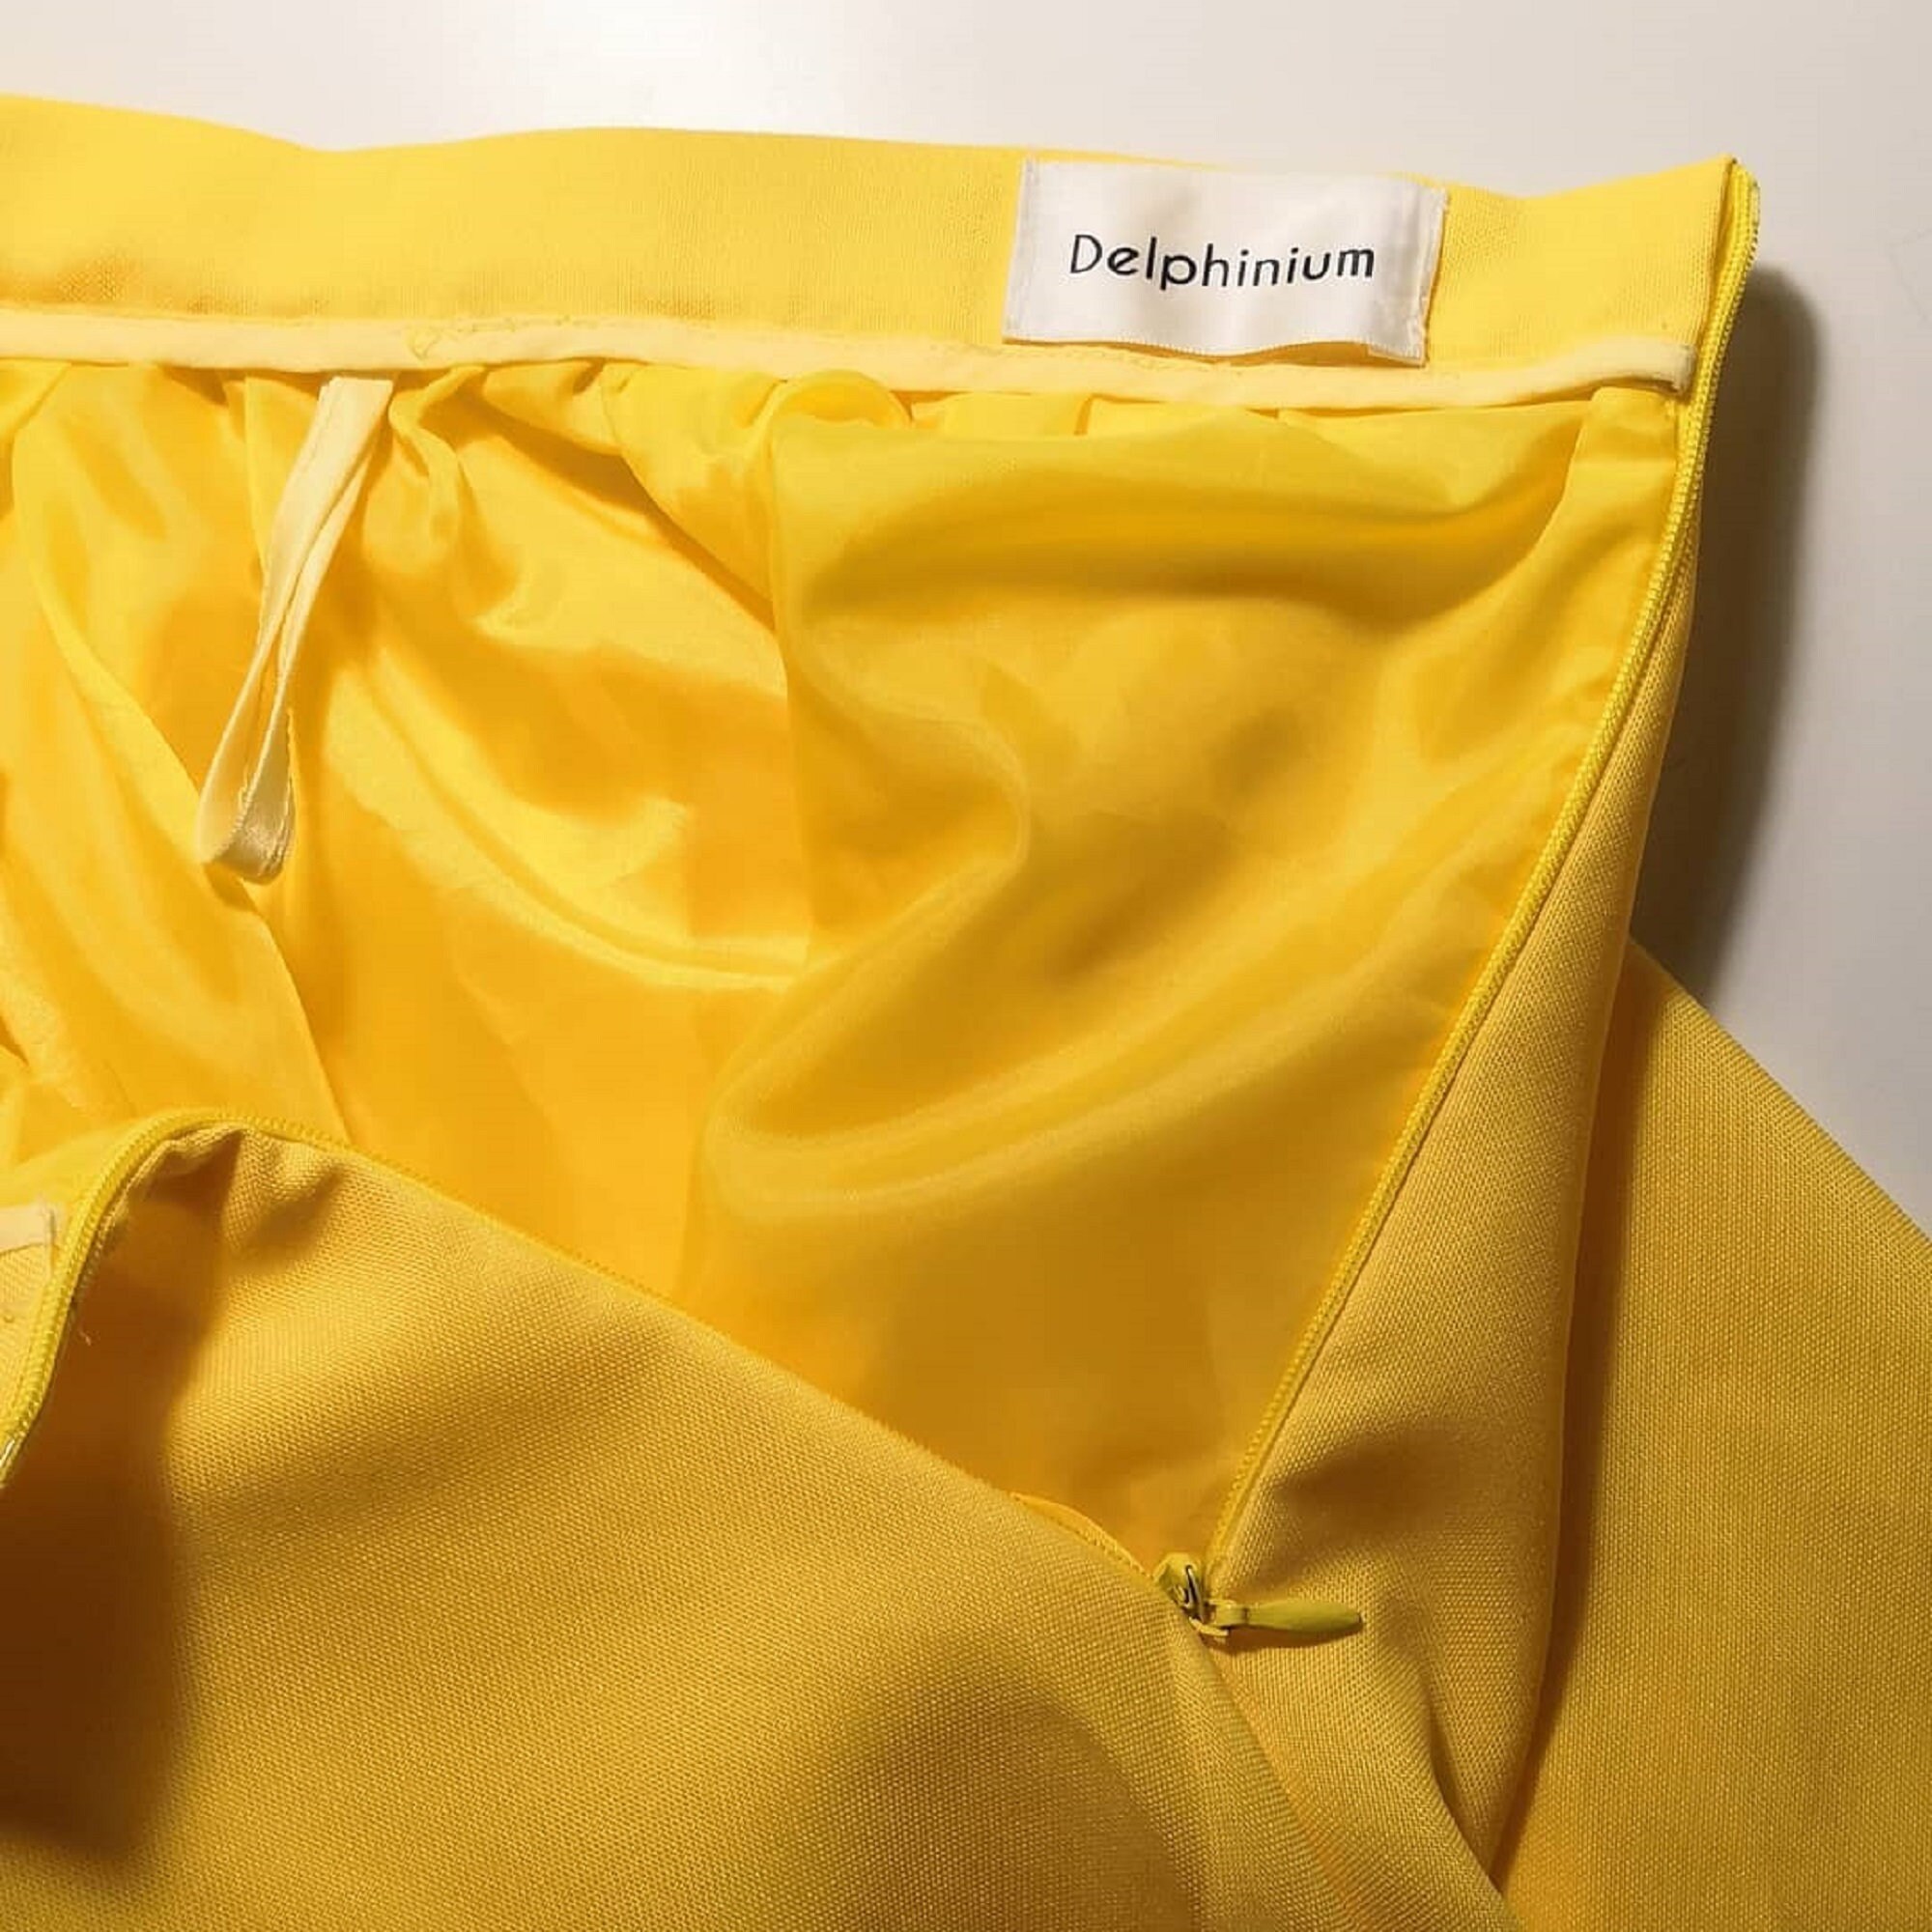 Skirt Yellow skirt Lemon skirt Circle skirt Lemon yellow skirt | Etsy